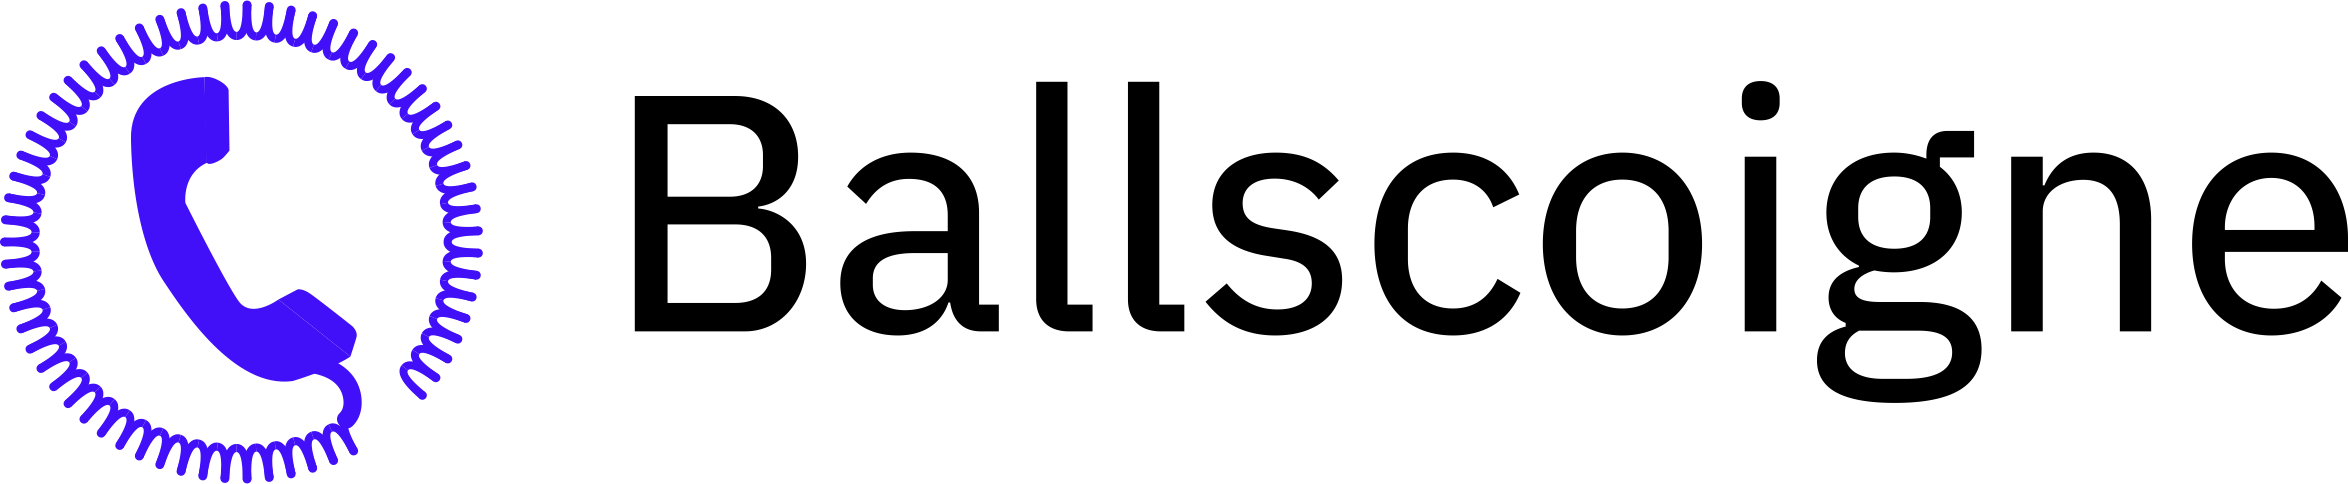 Ballscoigne Sans Serif Logo